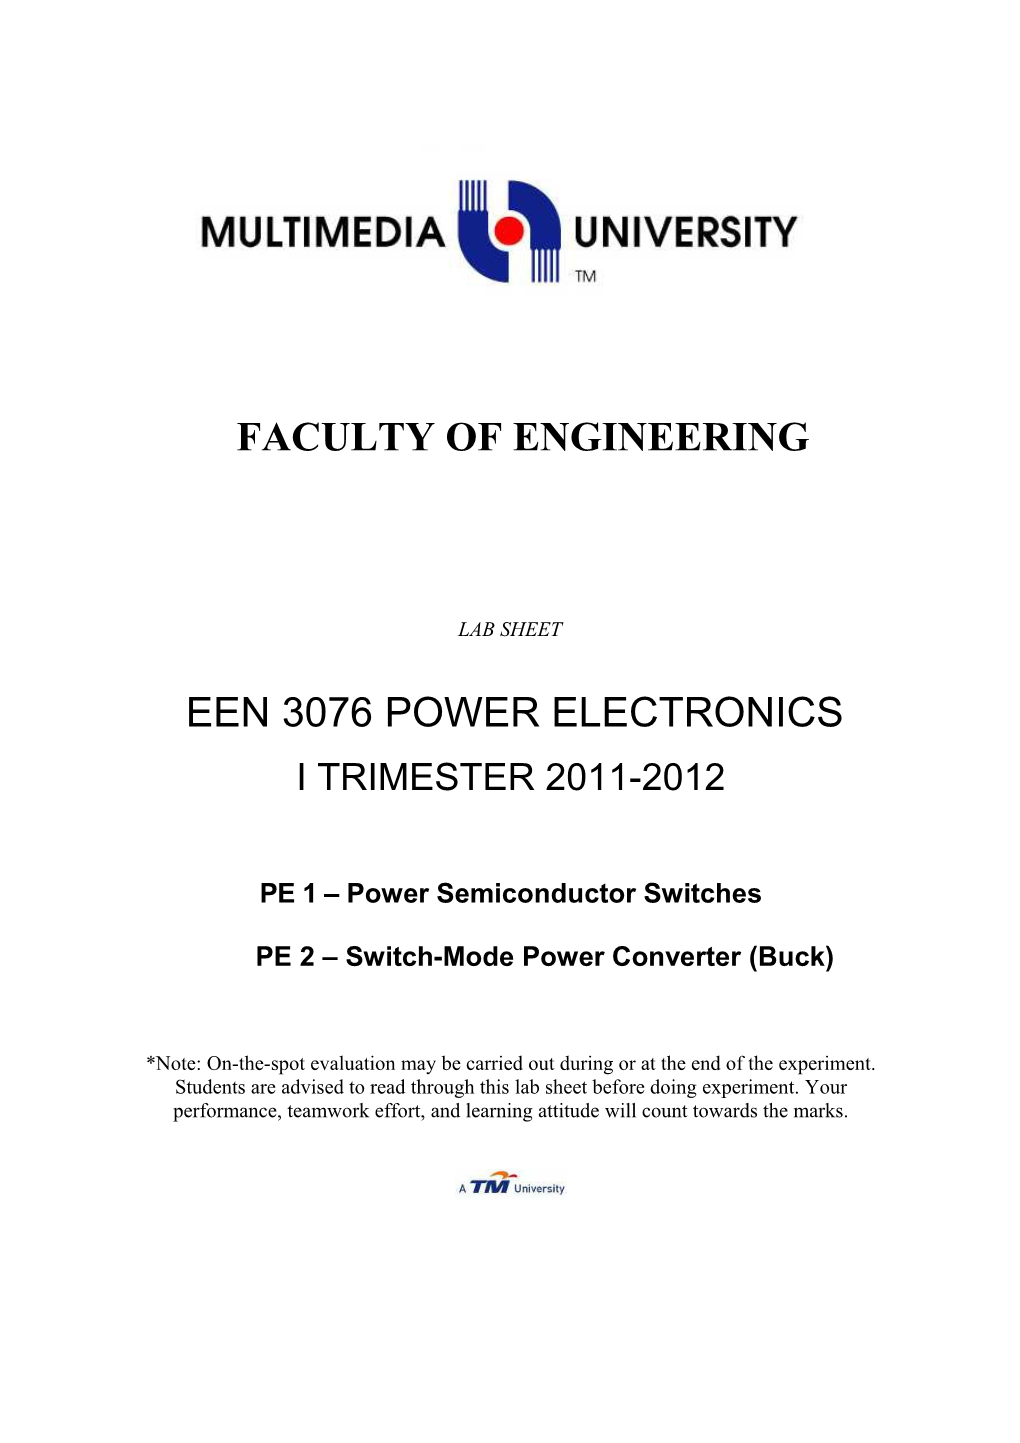 EEN3076 Power Electronics: PE1 & PE22010/2011